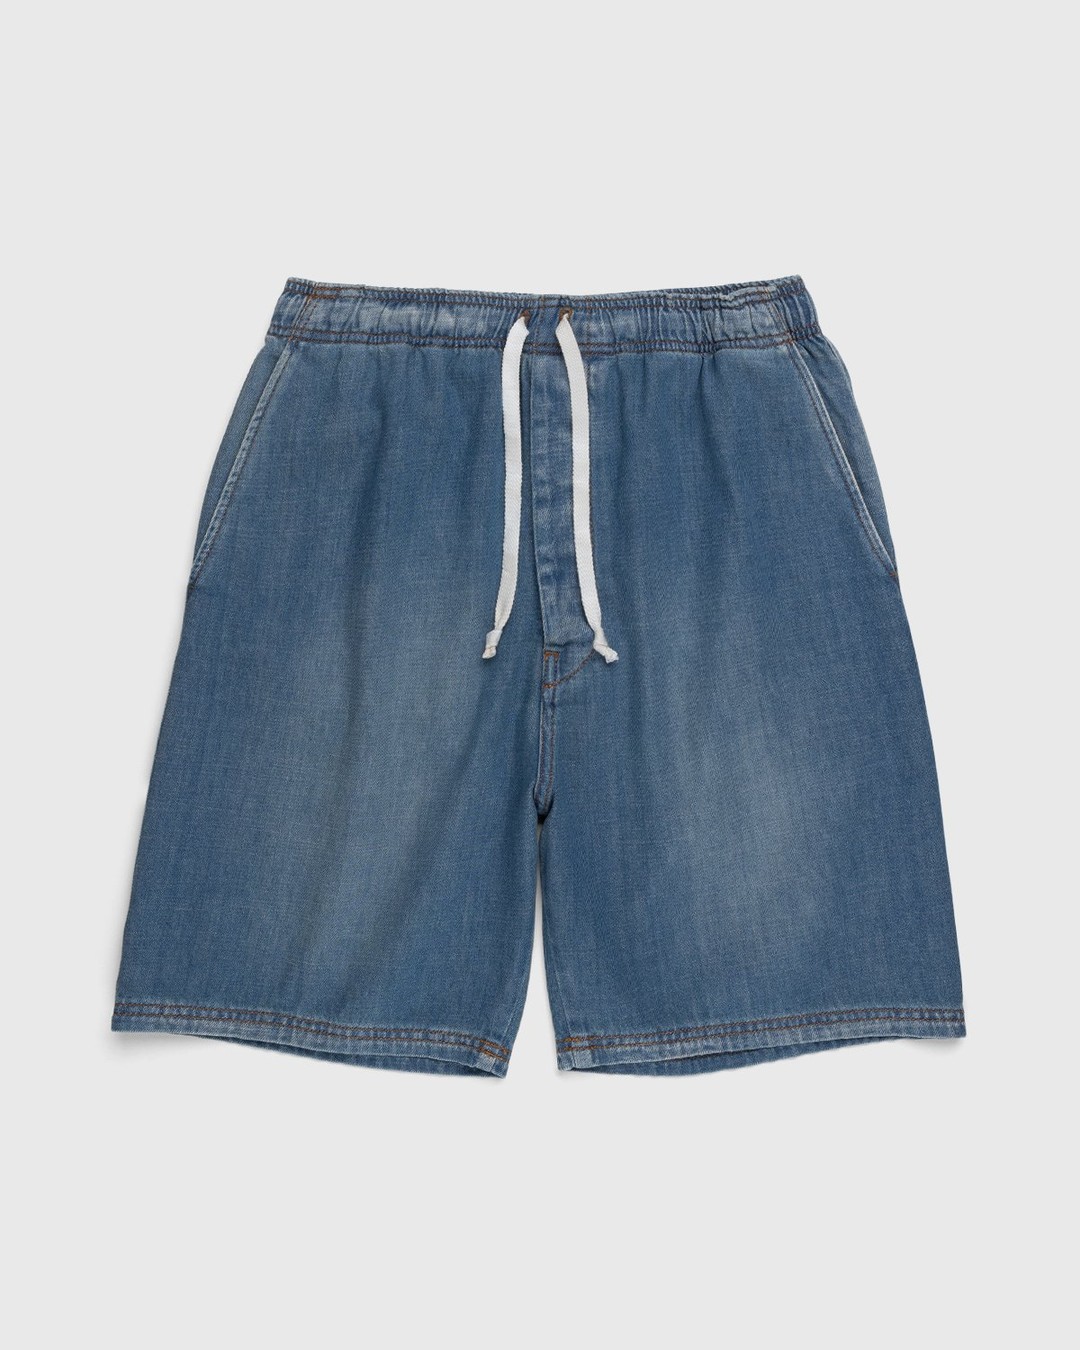 Loewe – Paula's Ibiza Drawstring Denim Shorts Blue - Shorts - Blue - Image 1